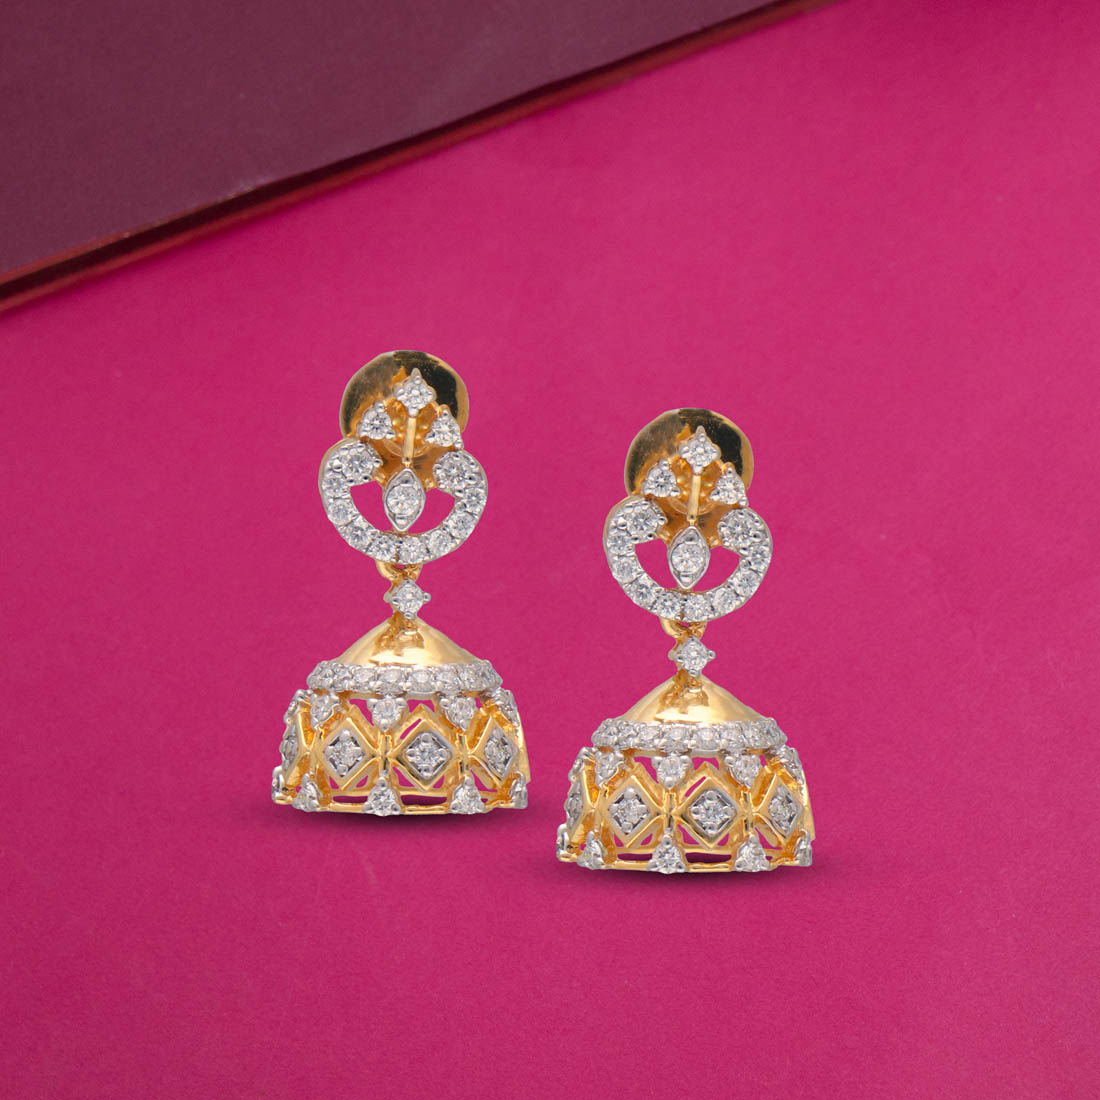 Discover 113+ american diamond earrings grt best